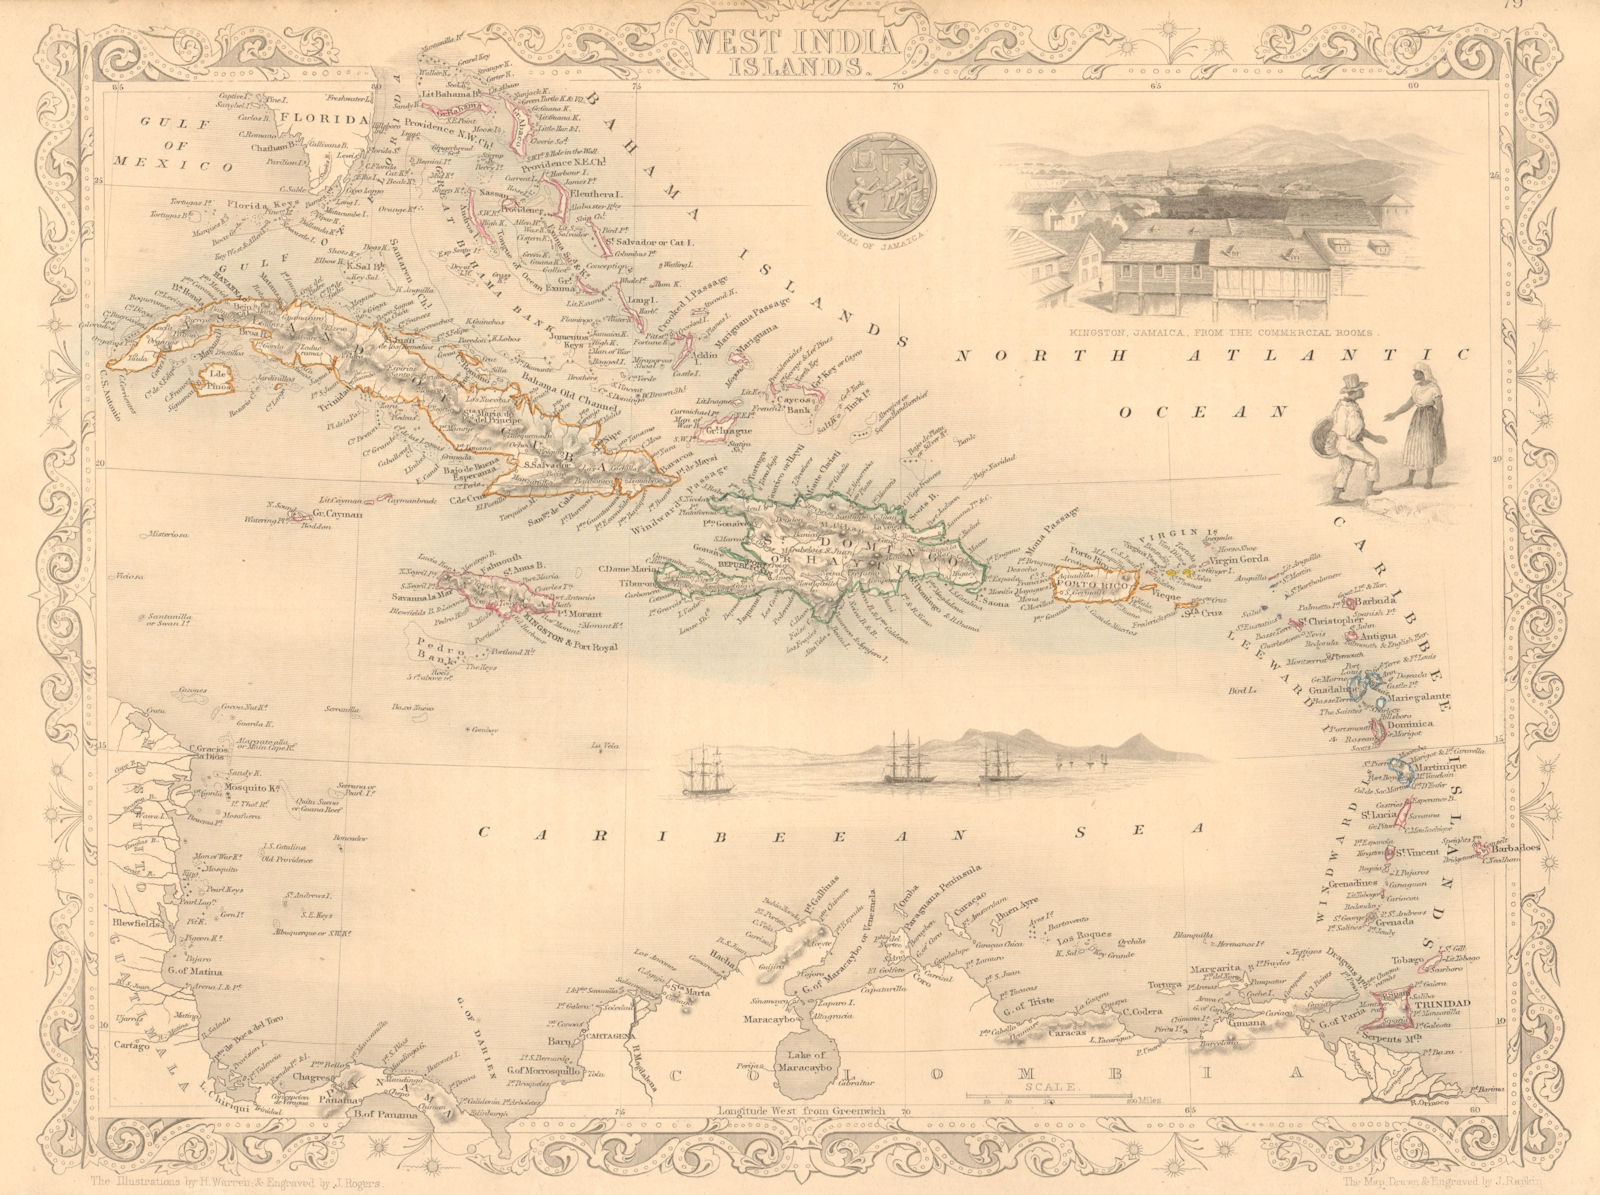 WEST INDIA ISLANDS. Antilles Caribbean Indies Bahamas. TALLIS & RAPKIN 1851 map